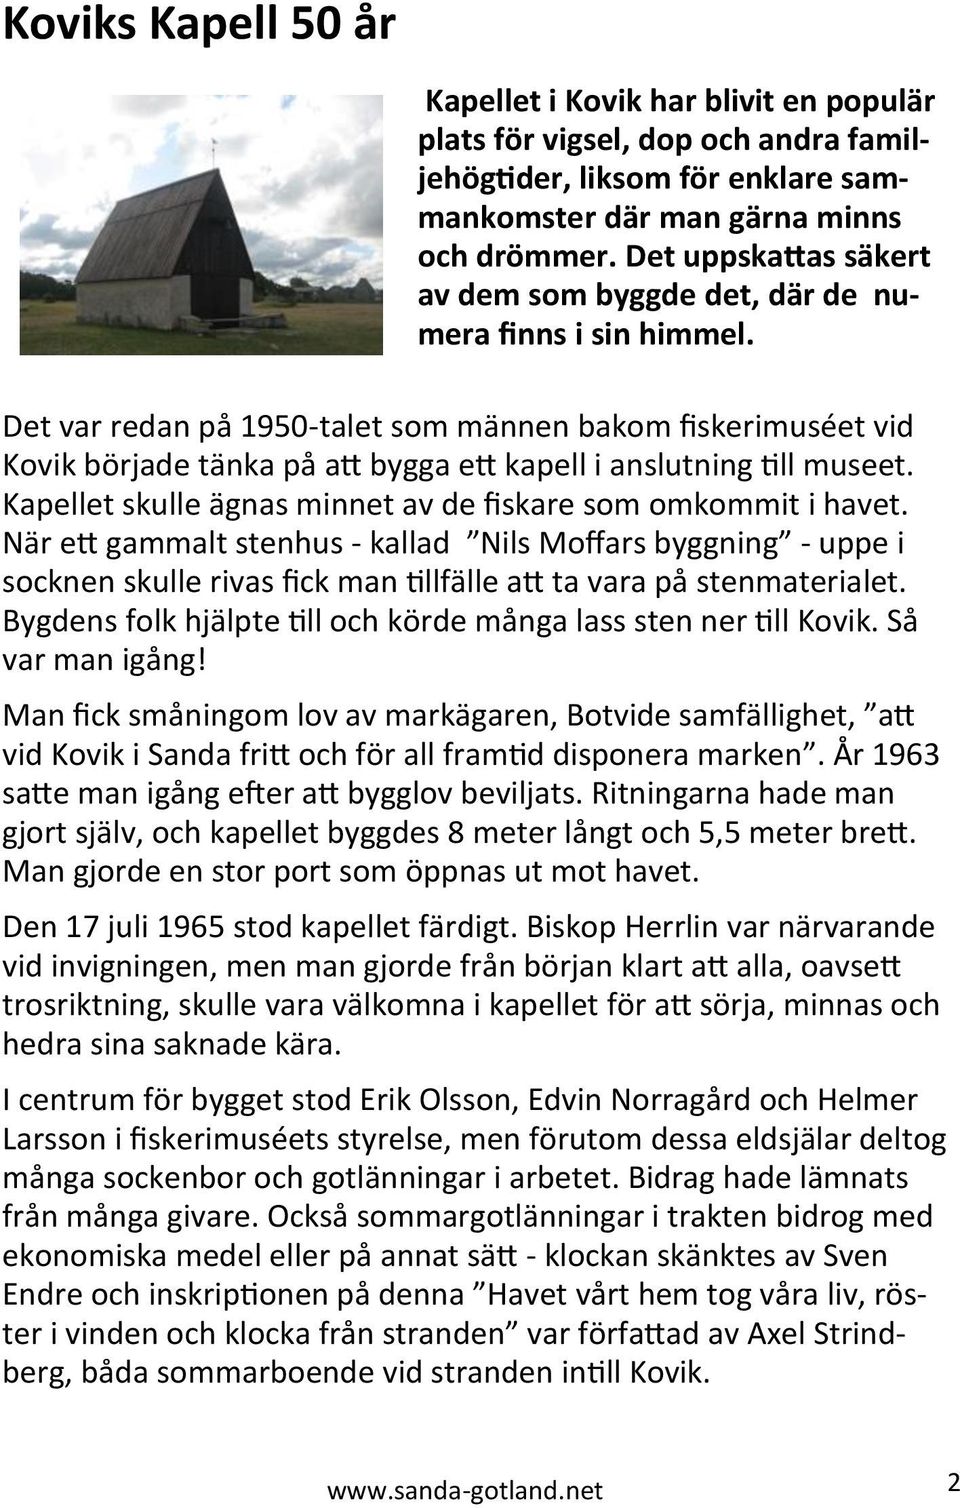 Det var redan på 1950-talet som männen bakom fiskerimuséet vid Kovik började tänka på att bygga ett kapell i anslutning till museet. Kapellet skulle ägnas minnet av de fiskare som omkommit i havet.